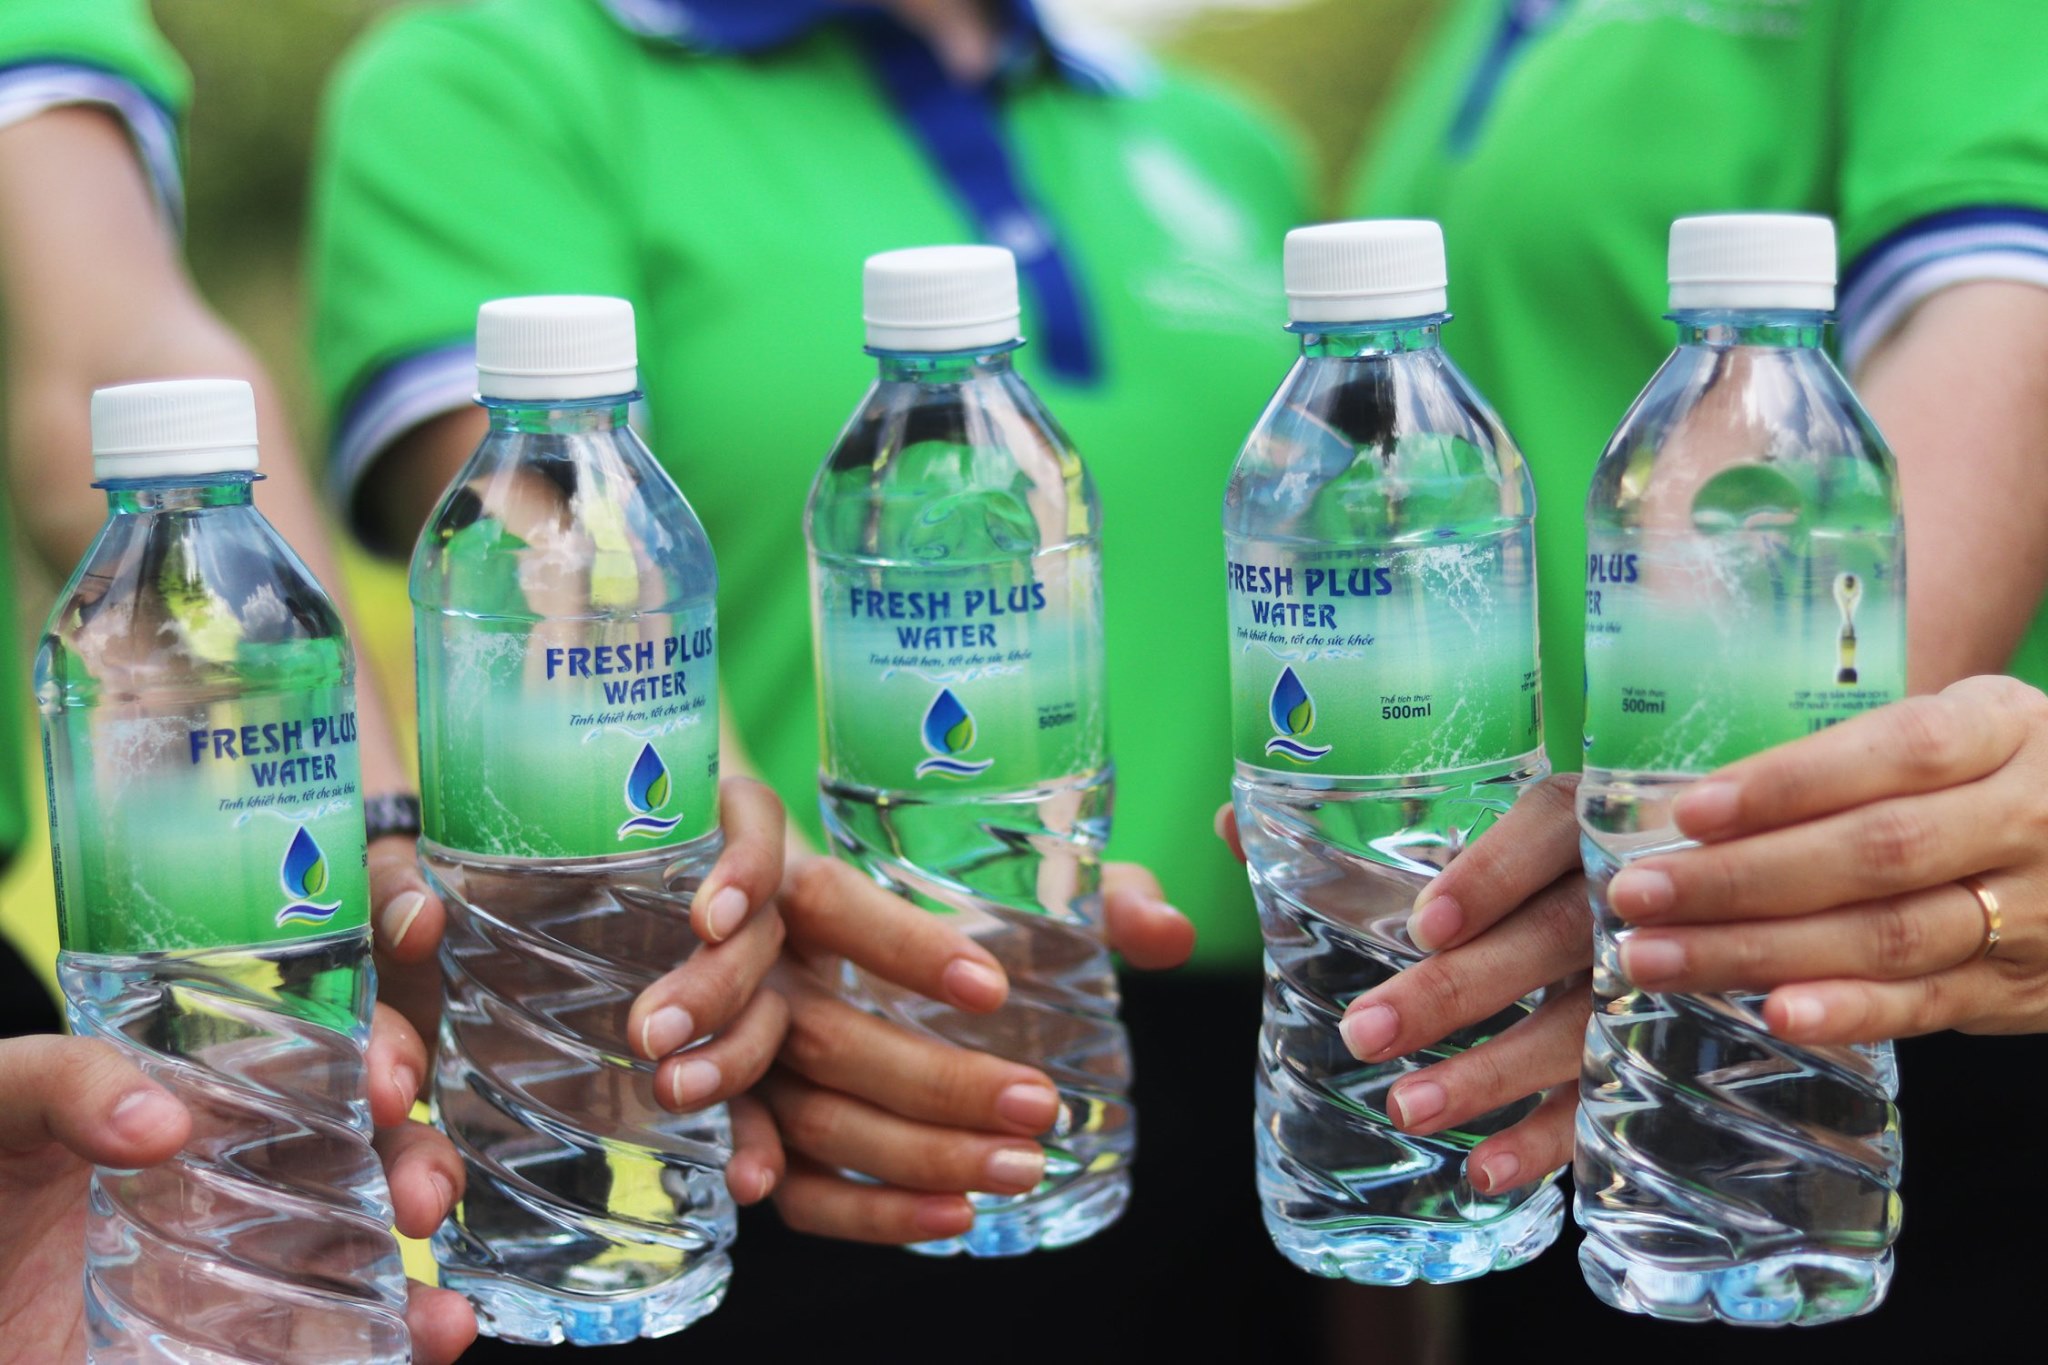 Tại Sài Gòn Fresh Plus cung cấp đa dạng các sản phẩm nước tinh khiết đóng chai từ bình 19 lít đến lốc/thùng 330ml, 500ml.